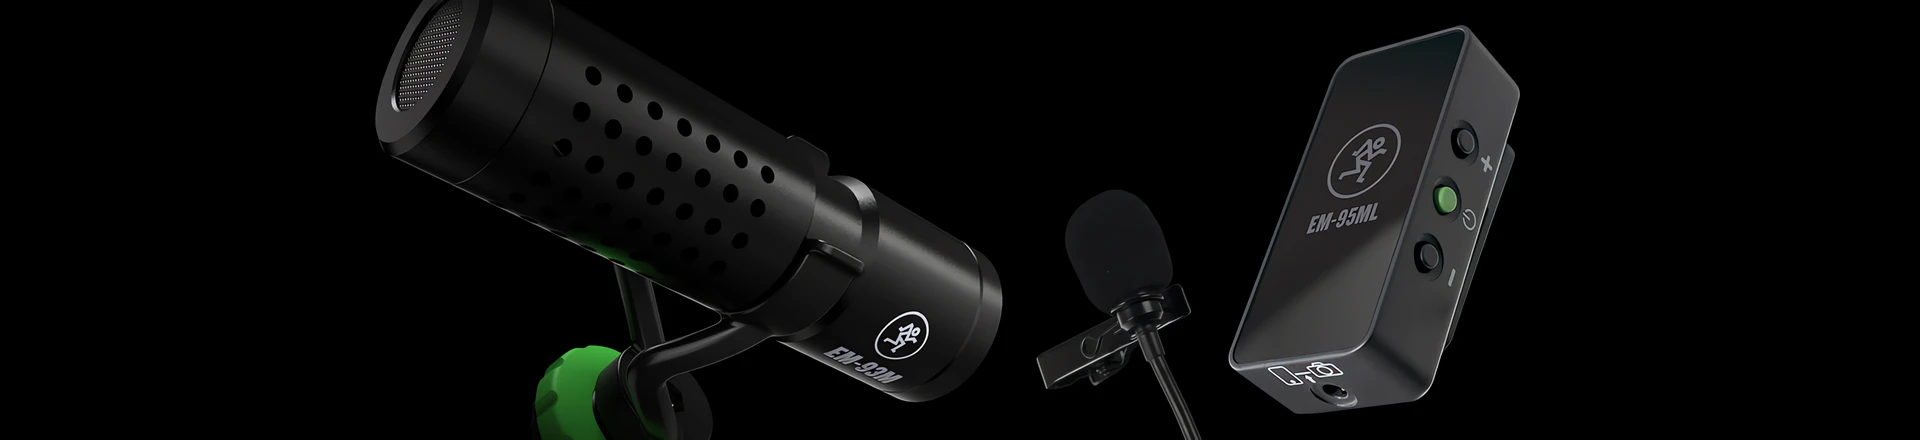 Test: Mackie EM, czyli nowe modele mikrofonów dla vloggerów